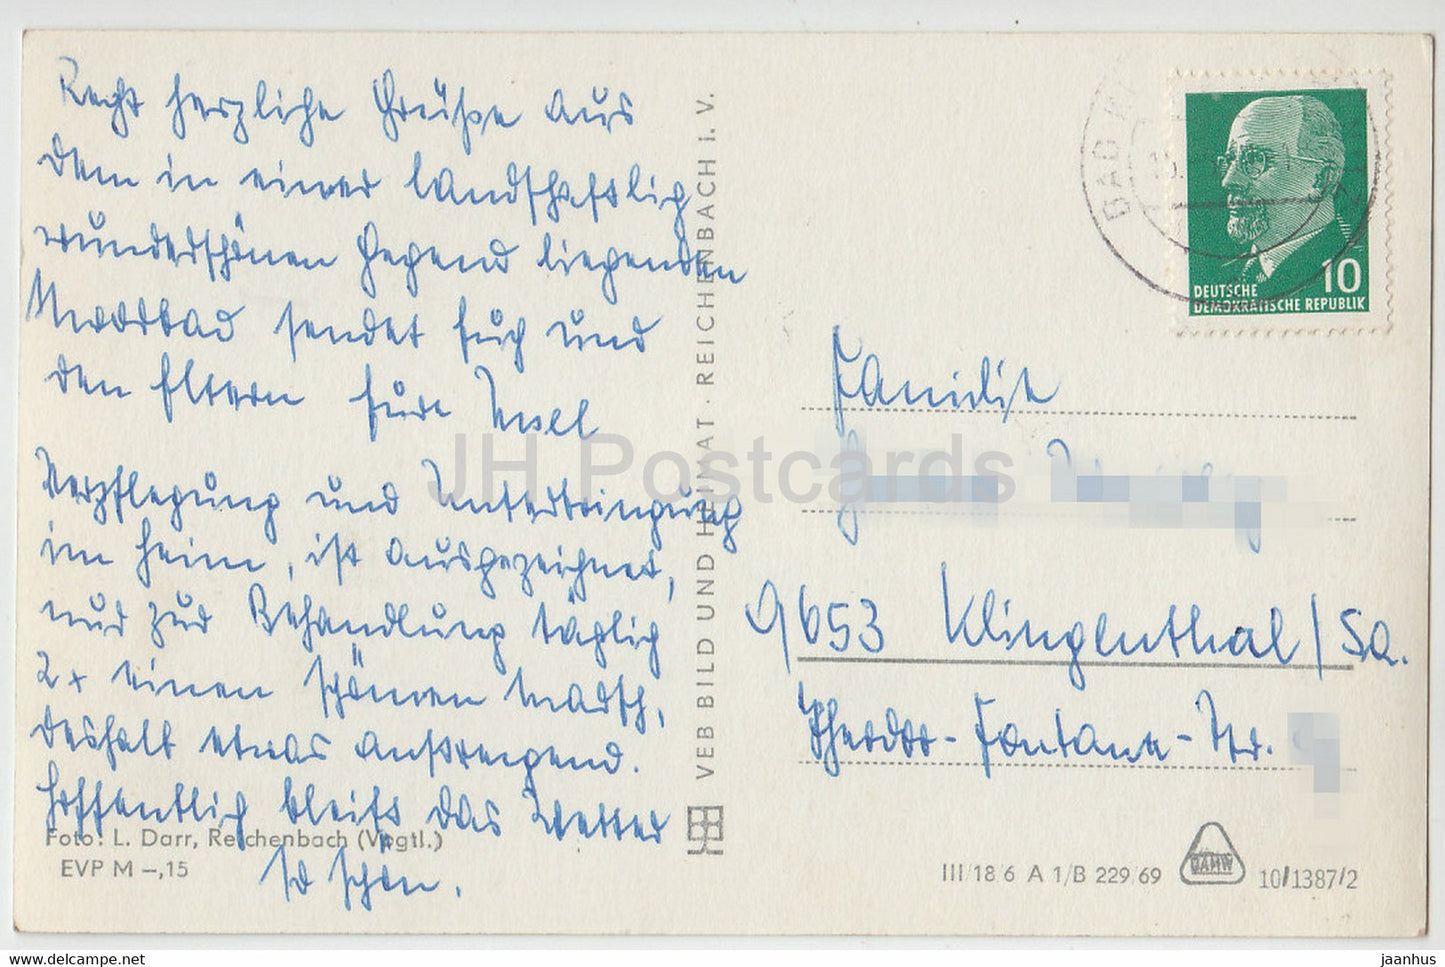 Bad Klosterlausnitz - Rathaus - HOG Ratskeller - Kurhotel Waldhaus zur Koppe - Moorbad - Deutschland DDR - gebraucht